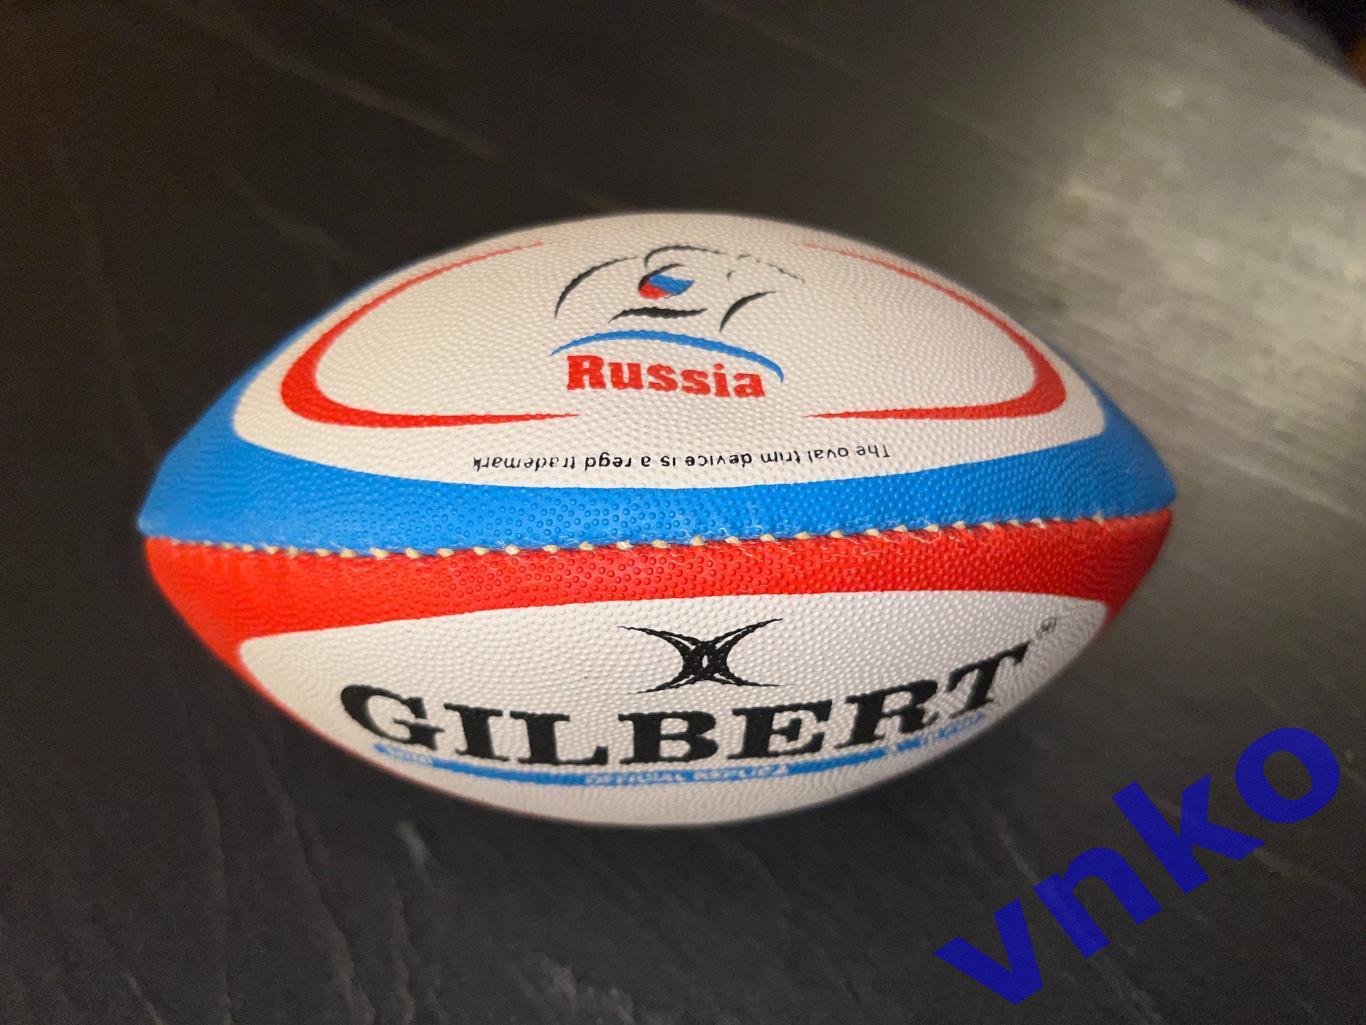 сувенирный регби-мяч Gilbert мини - Сборная России